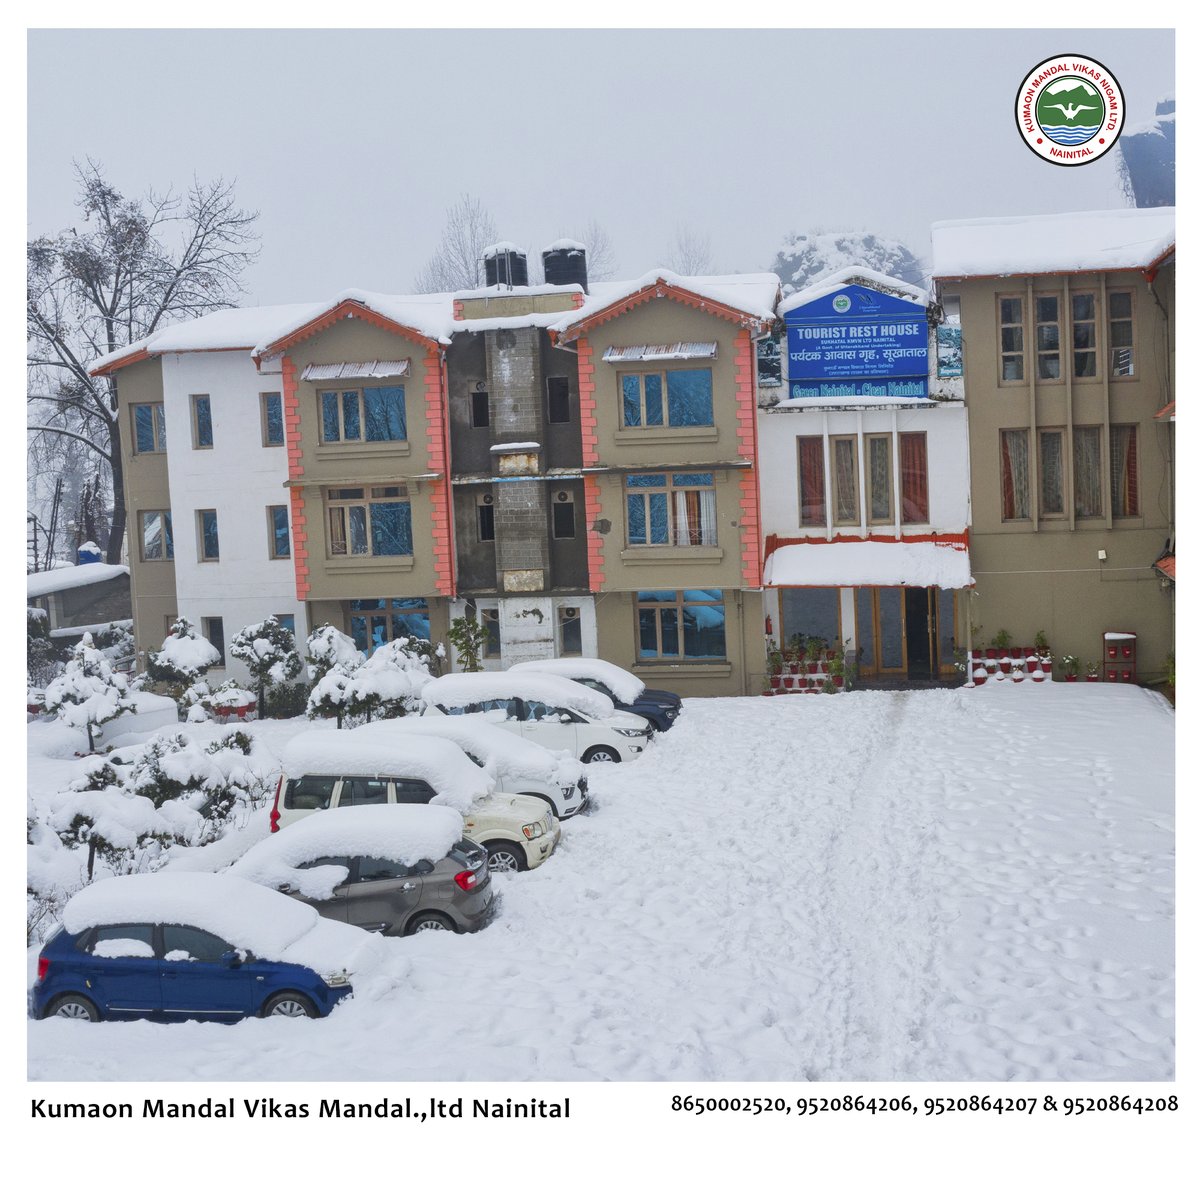 Discover the enchanting winter wonderland in #nainital of Uttarakhand! A season of love and adventure awaits! #uttarakhandtraveller #uttarakhand #uttarkhandtourism #nainital #kmvn #snowfall #WinterWonderland #snowfallinnainital #UttarakhandTunnel